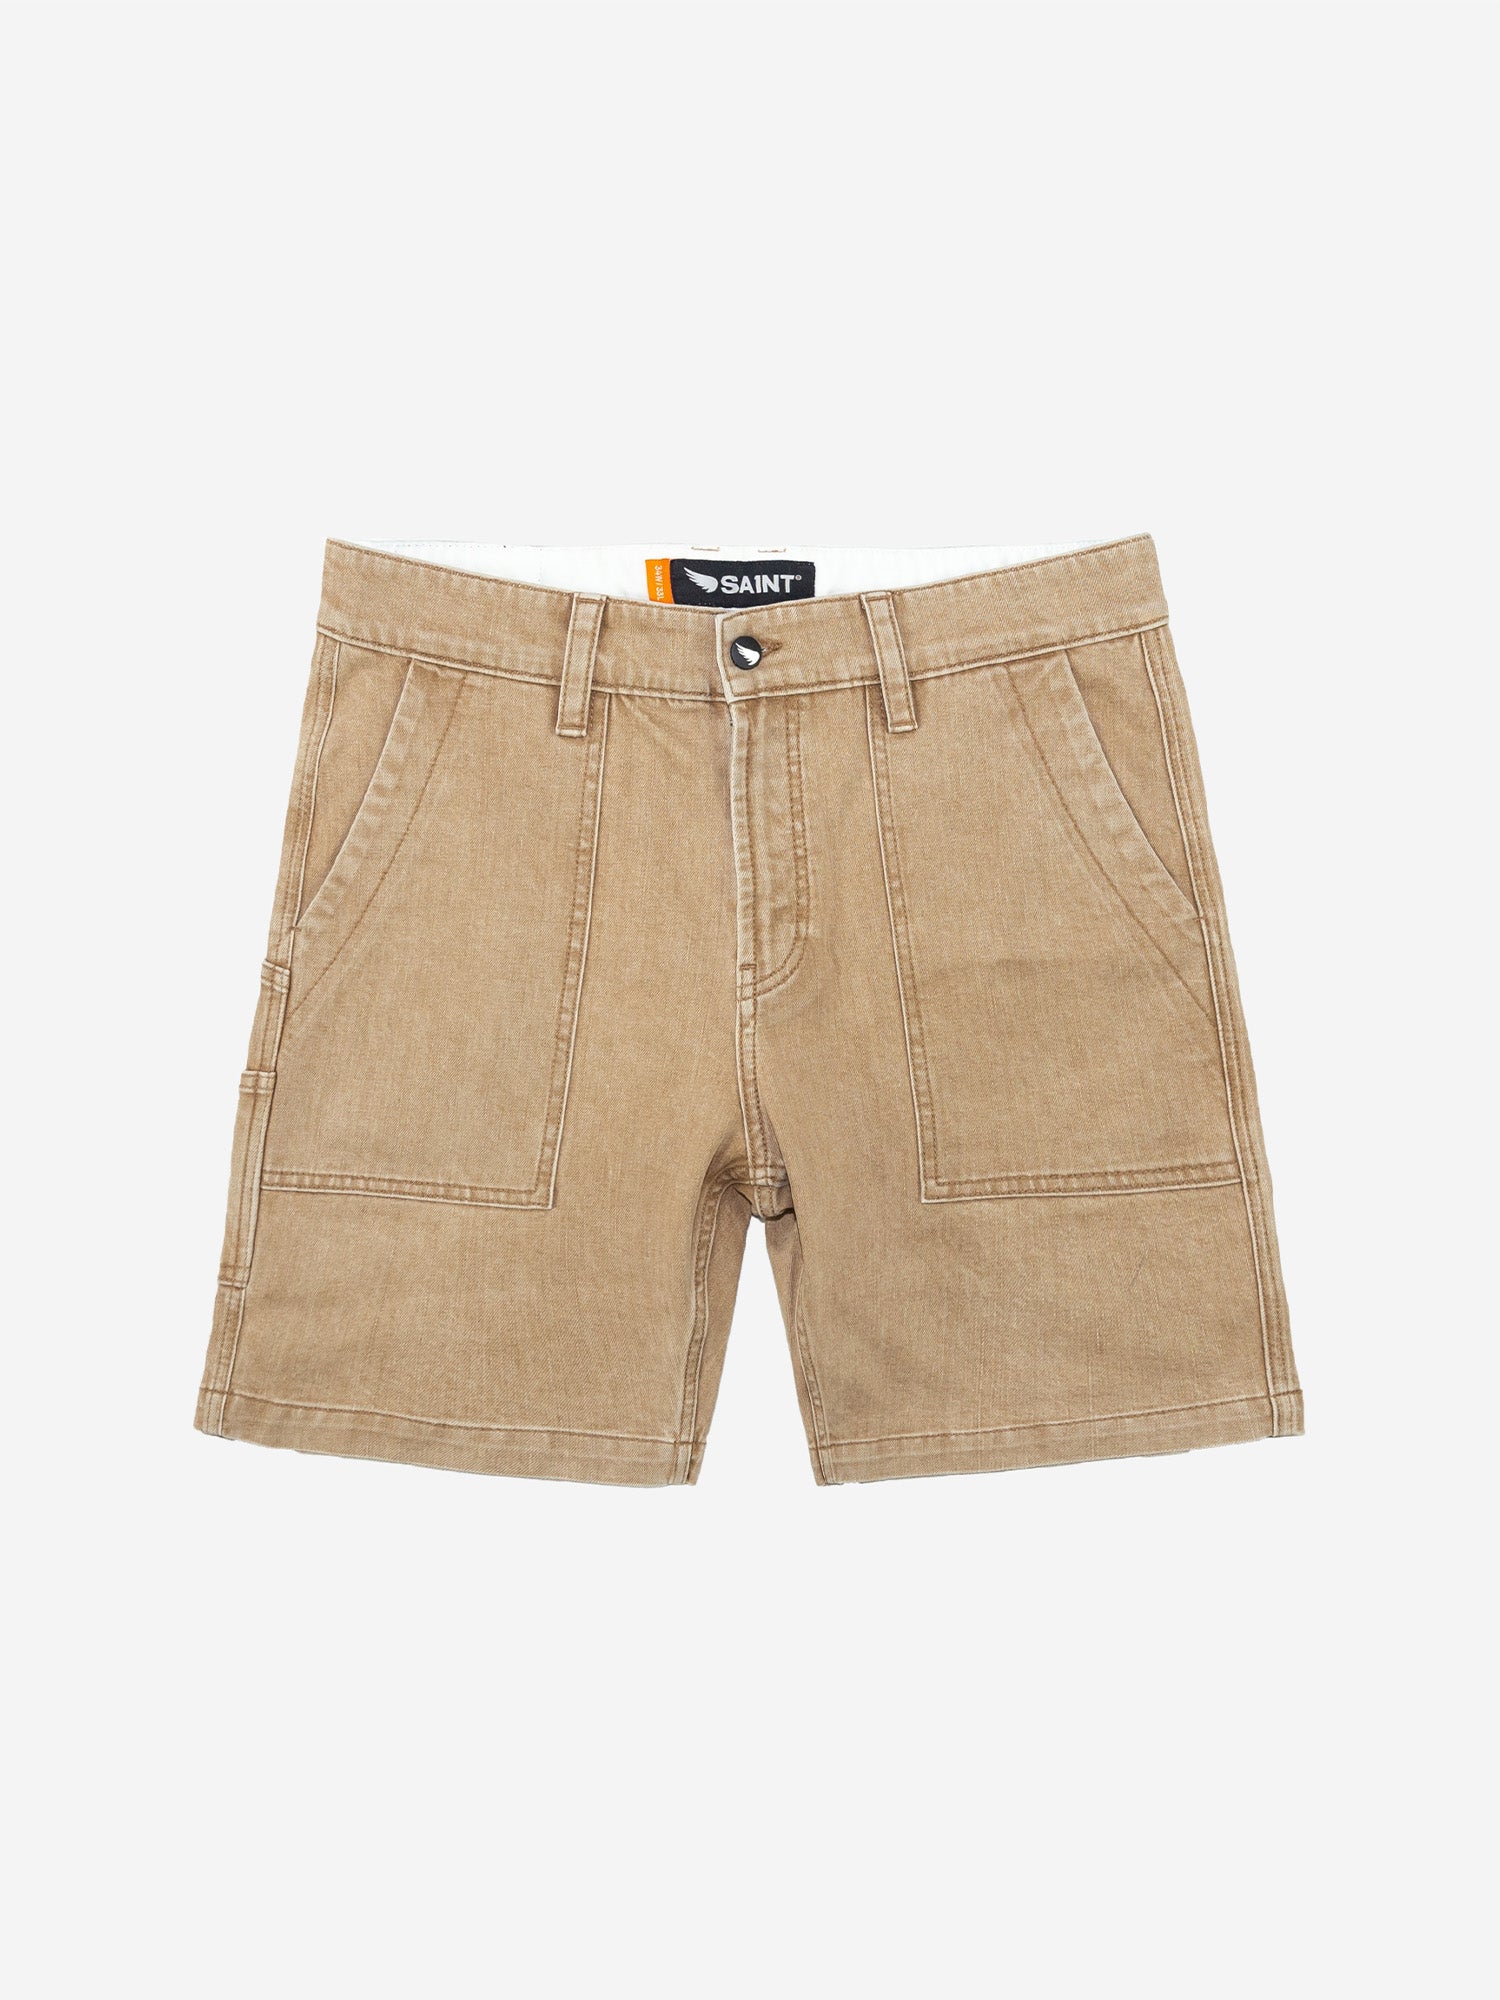 Men's Shorts | SA1NT